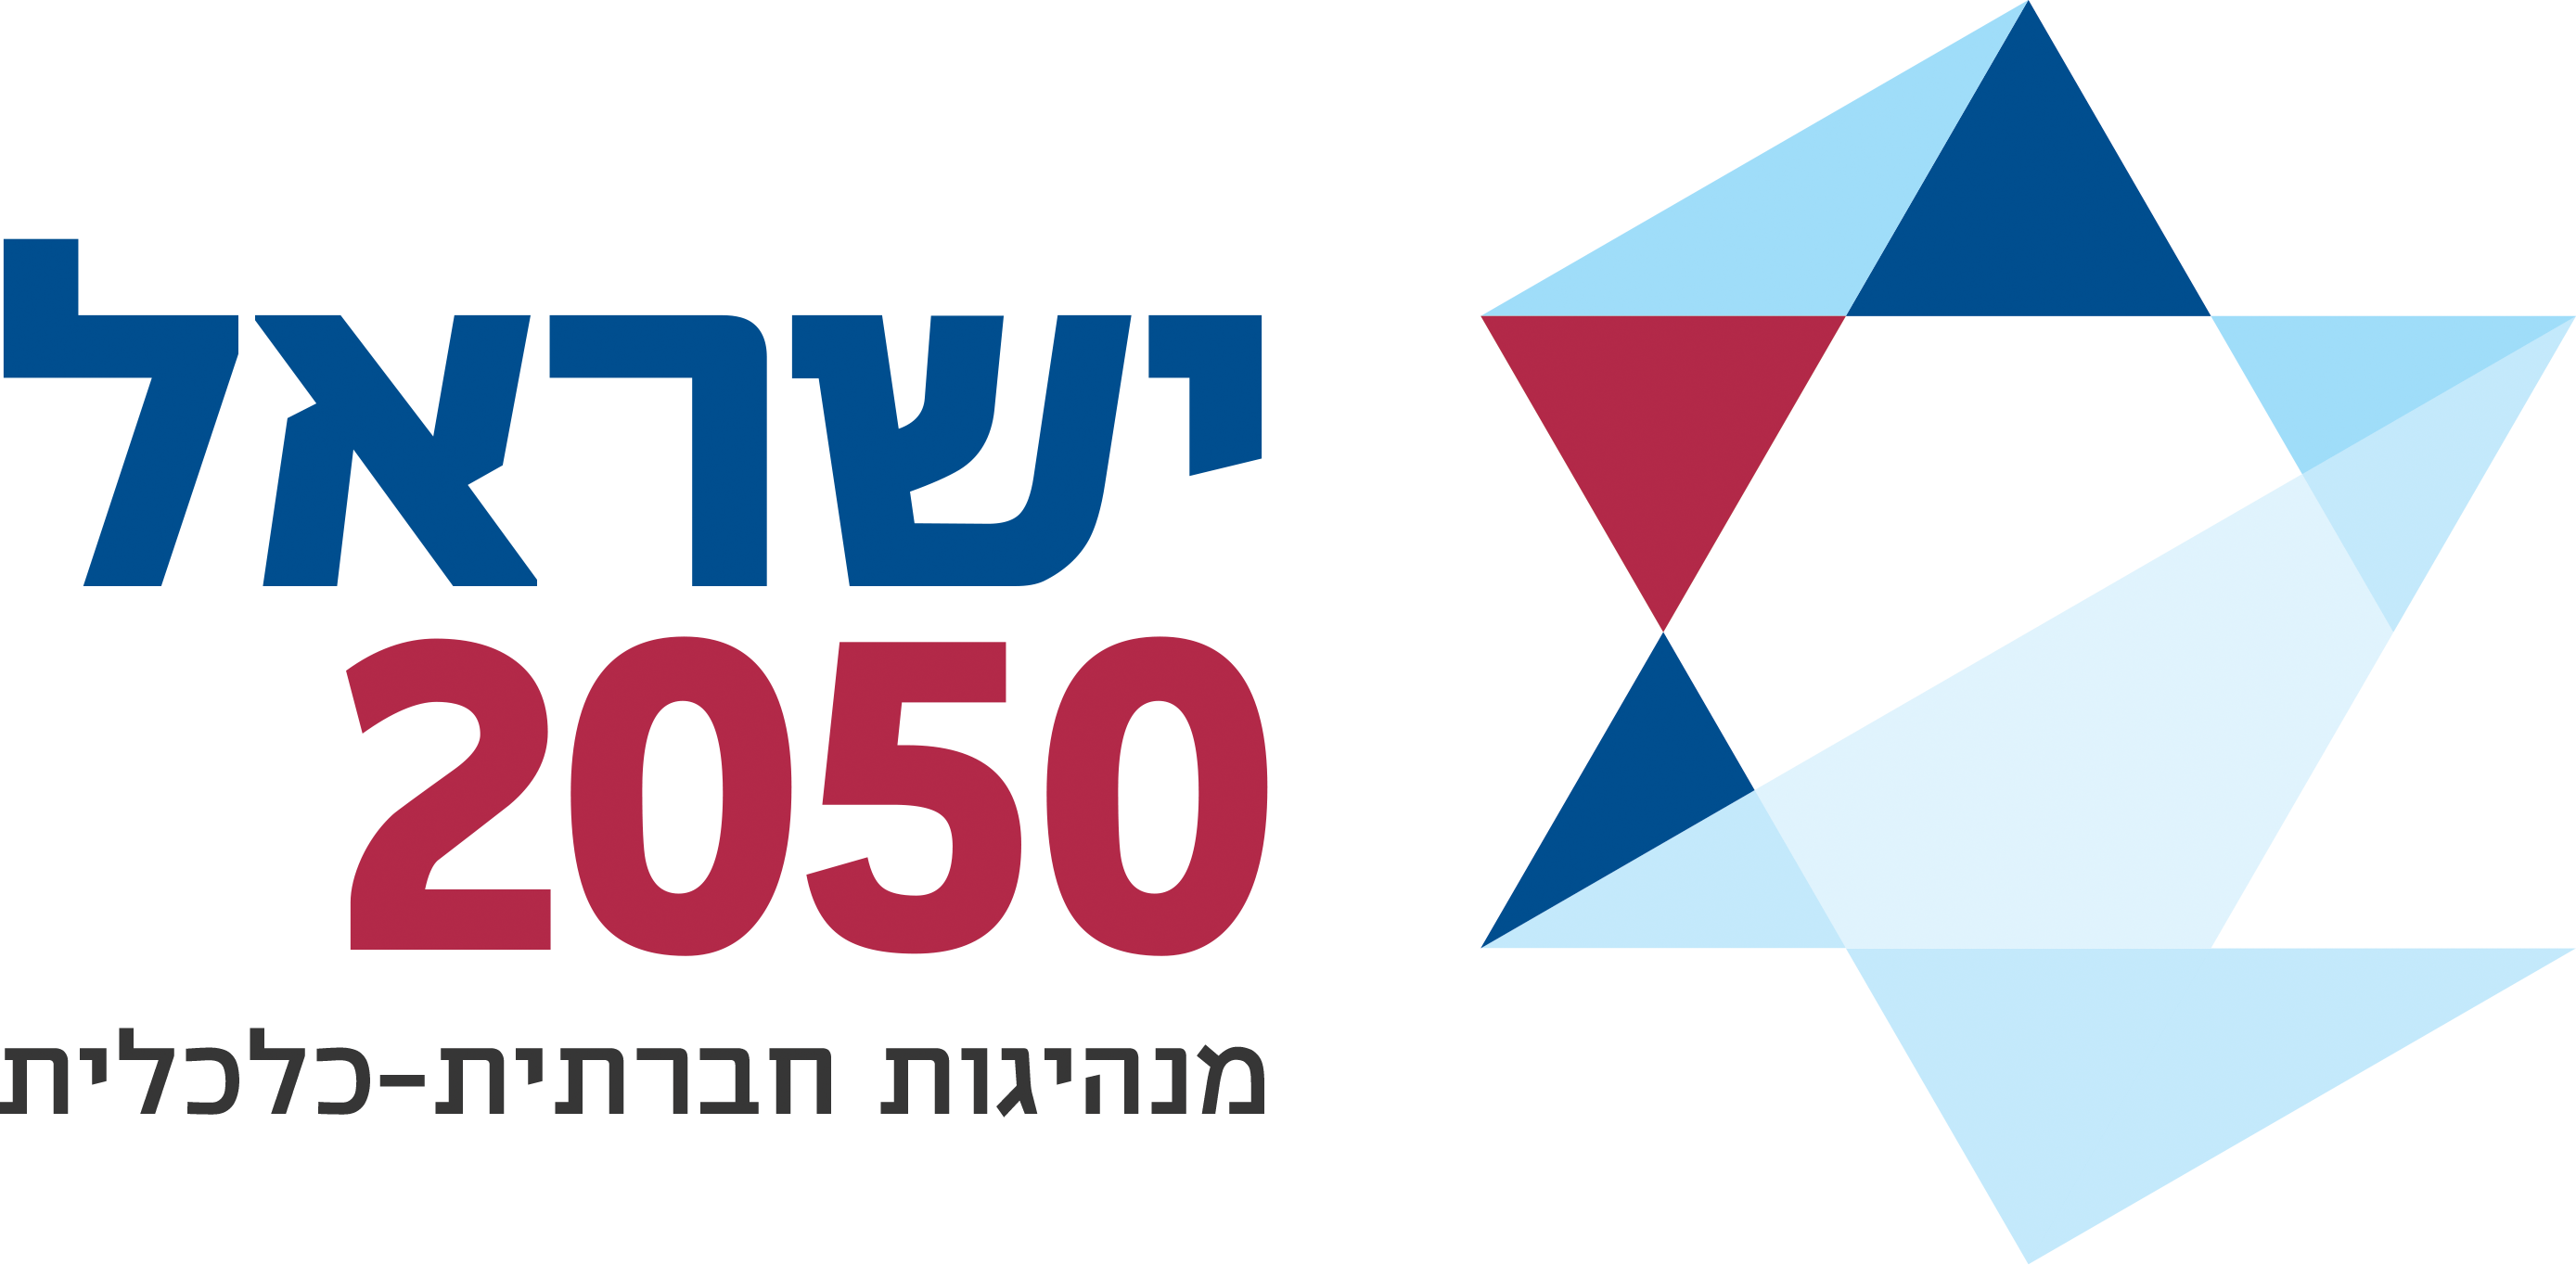 ישראל 2050 מנהיגות חברתית כלכלית מבית התאחדות הסטודנטים